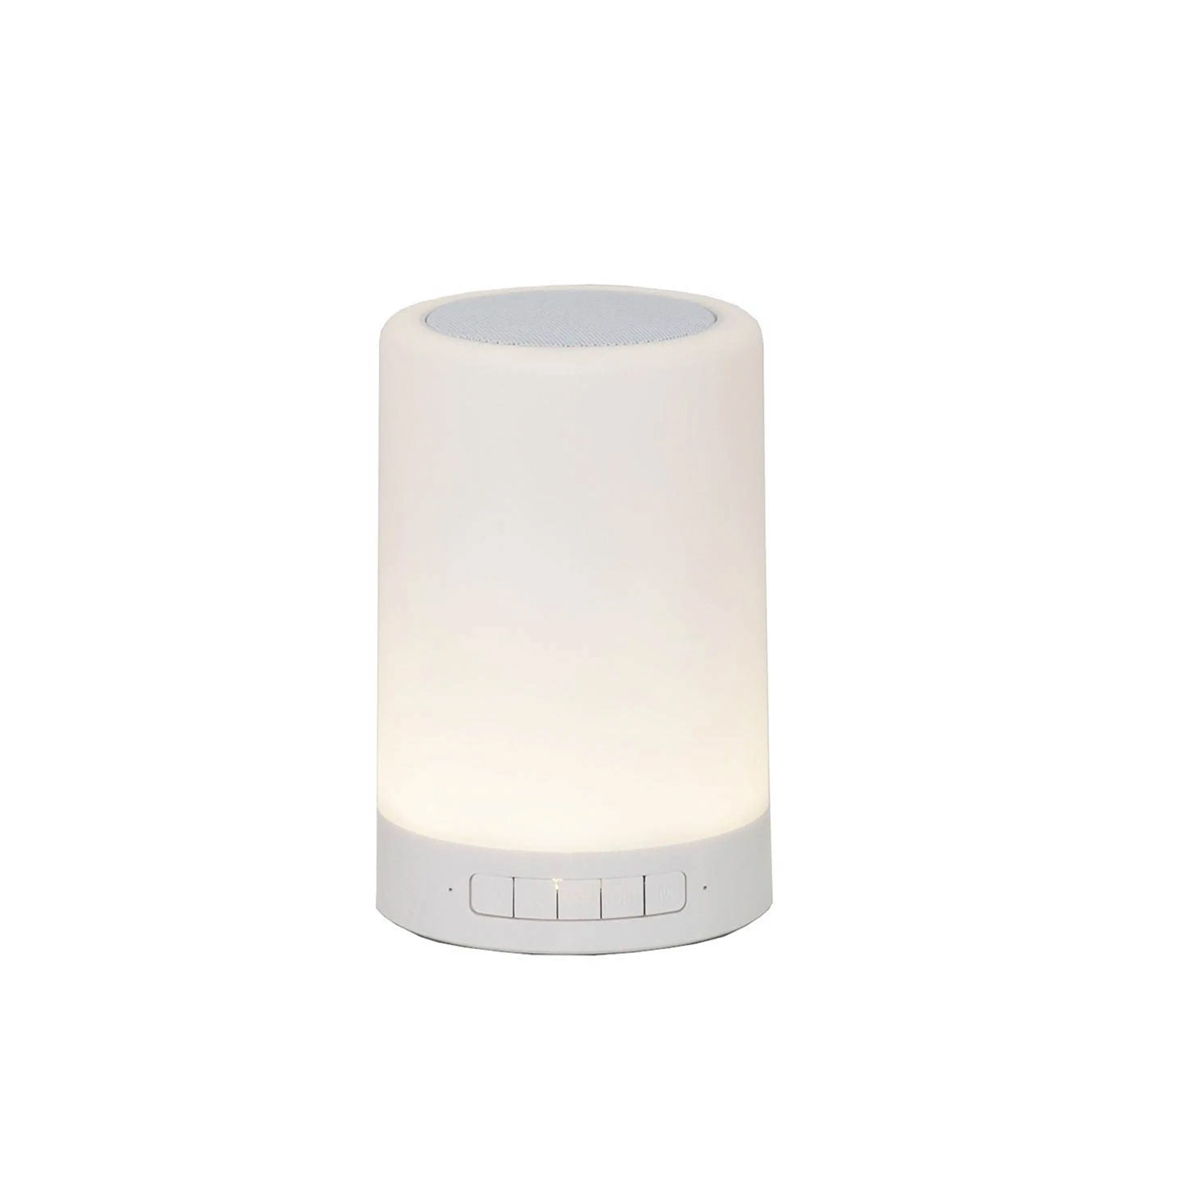 Altavoz Bluetooth Smartek Con Iluminación Luz Cálida Regulable Y Linterna Portátil - blanco - 